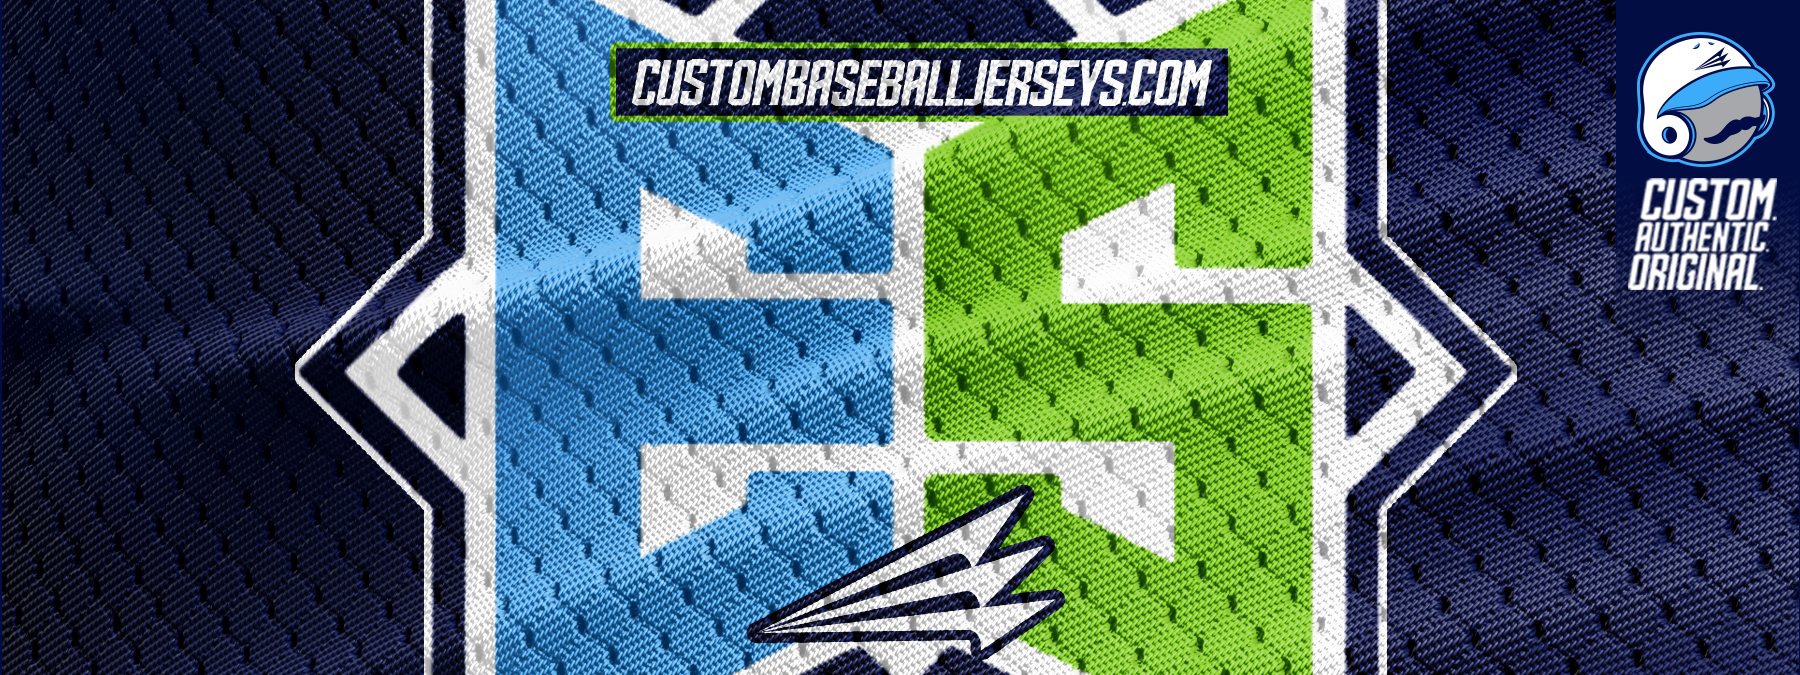 Custom baseball jerseys design baseballs jersey baseball jersey custom jersey